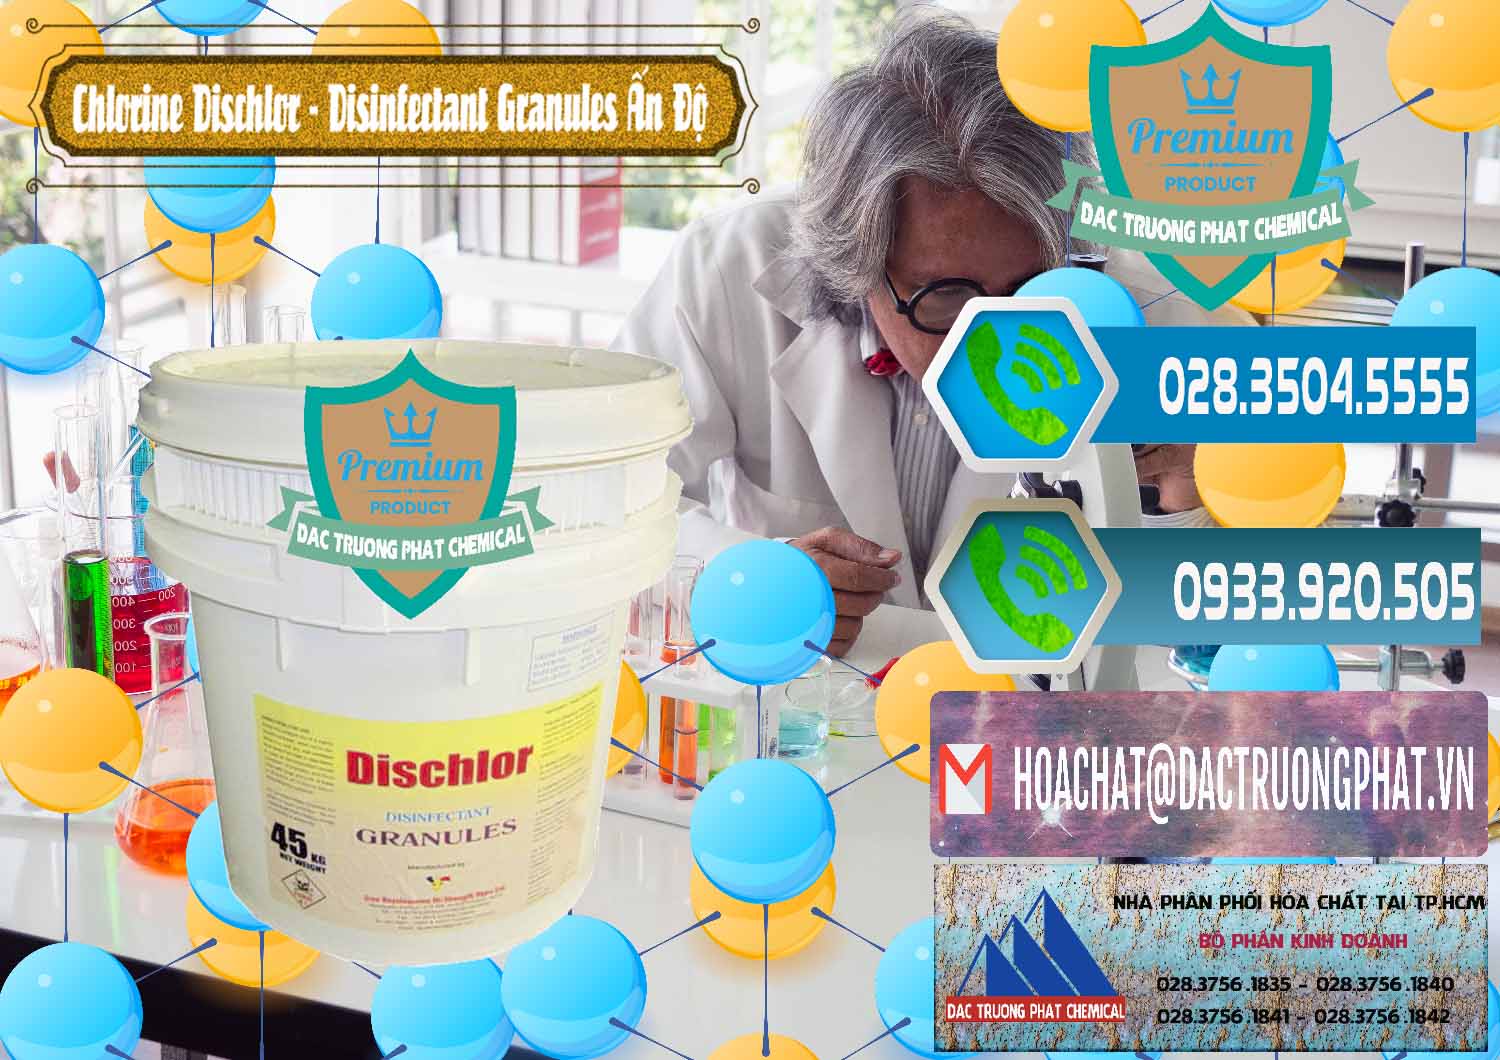 Nơi chuyên bán và cung cấp Chlorine – Clorin 70% Dischlor - Disinfectant Granules Ấn Độ India - 0248 - Chuyên cung cấp _ kinh doanh hóa chất tại TP.HCM - congtyhoachat.net